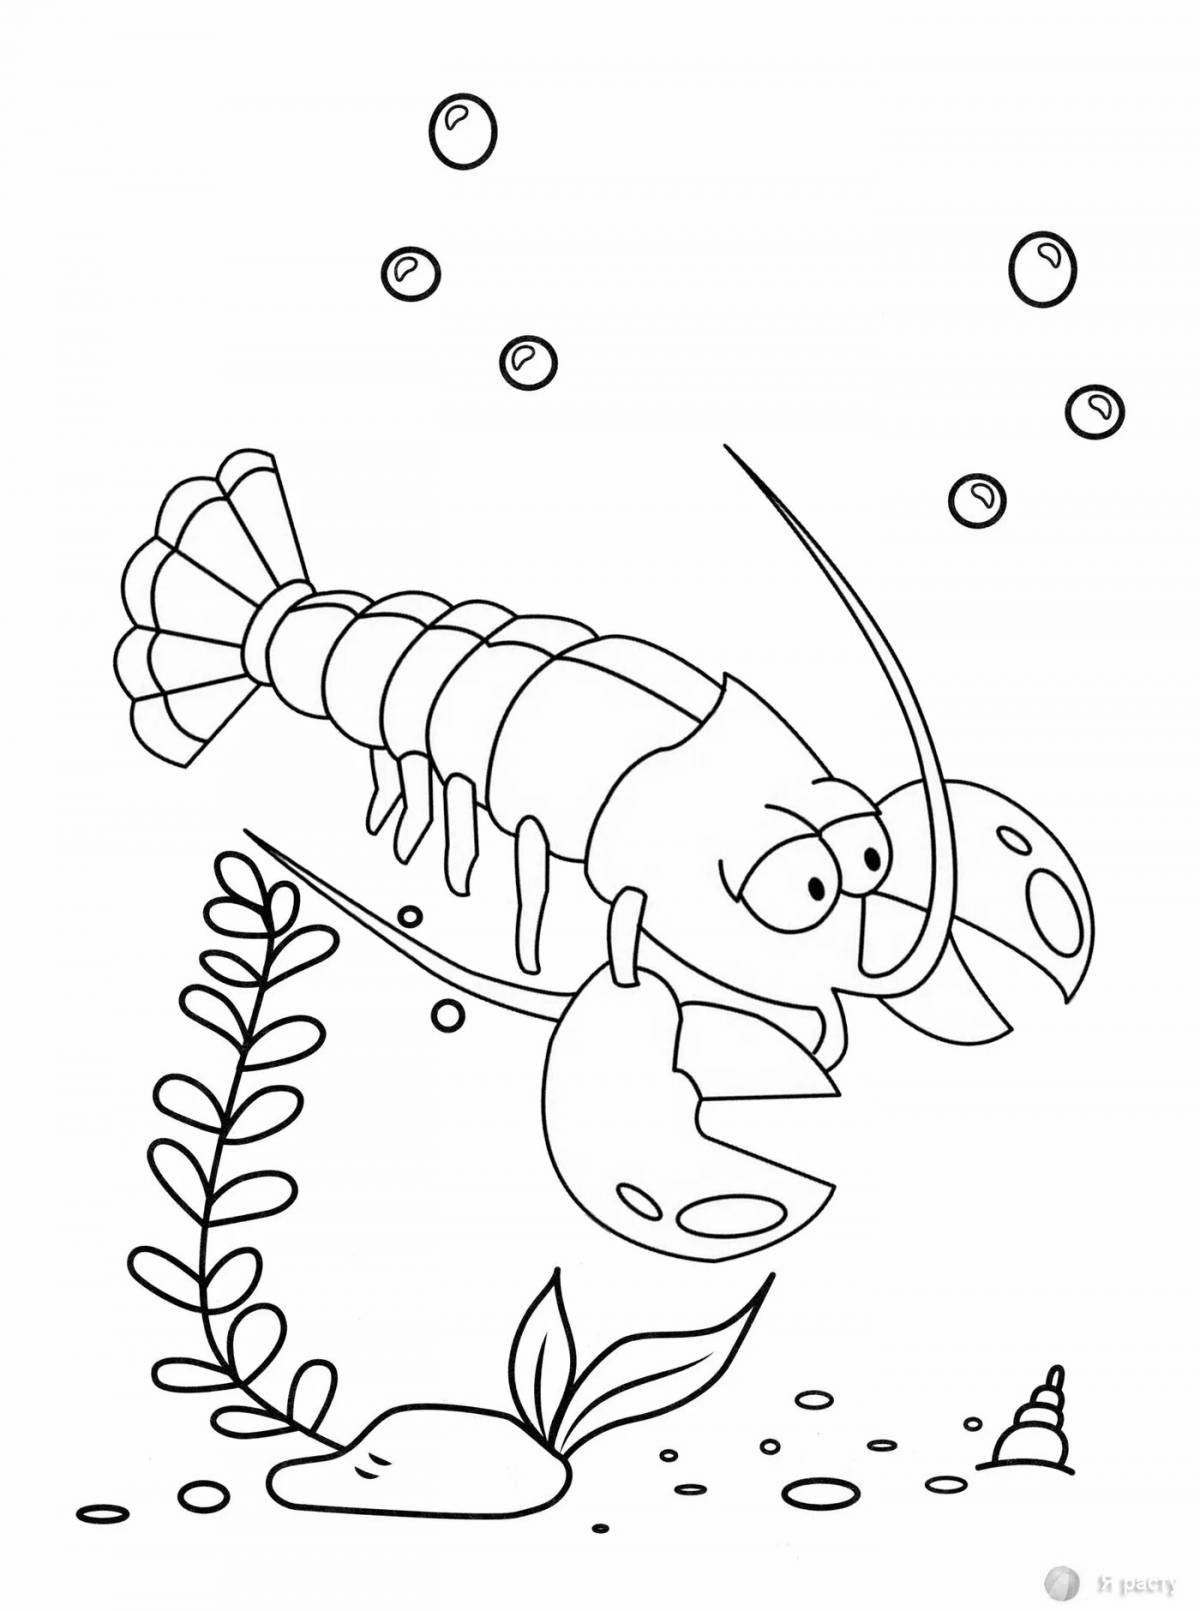 Adorable mantis shrimp coloring page